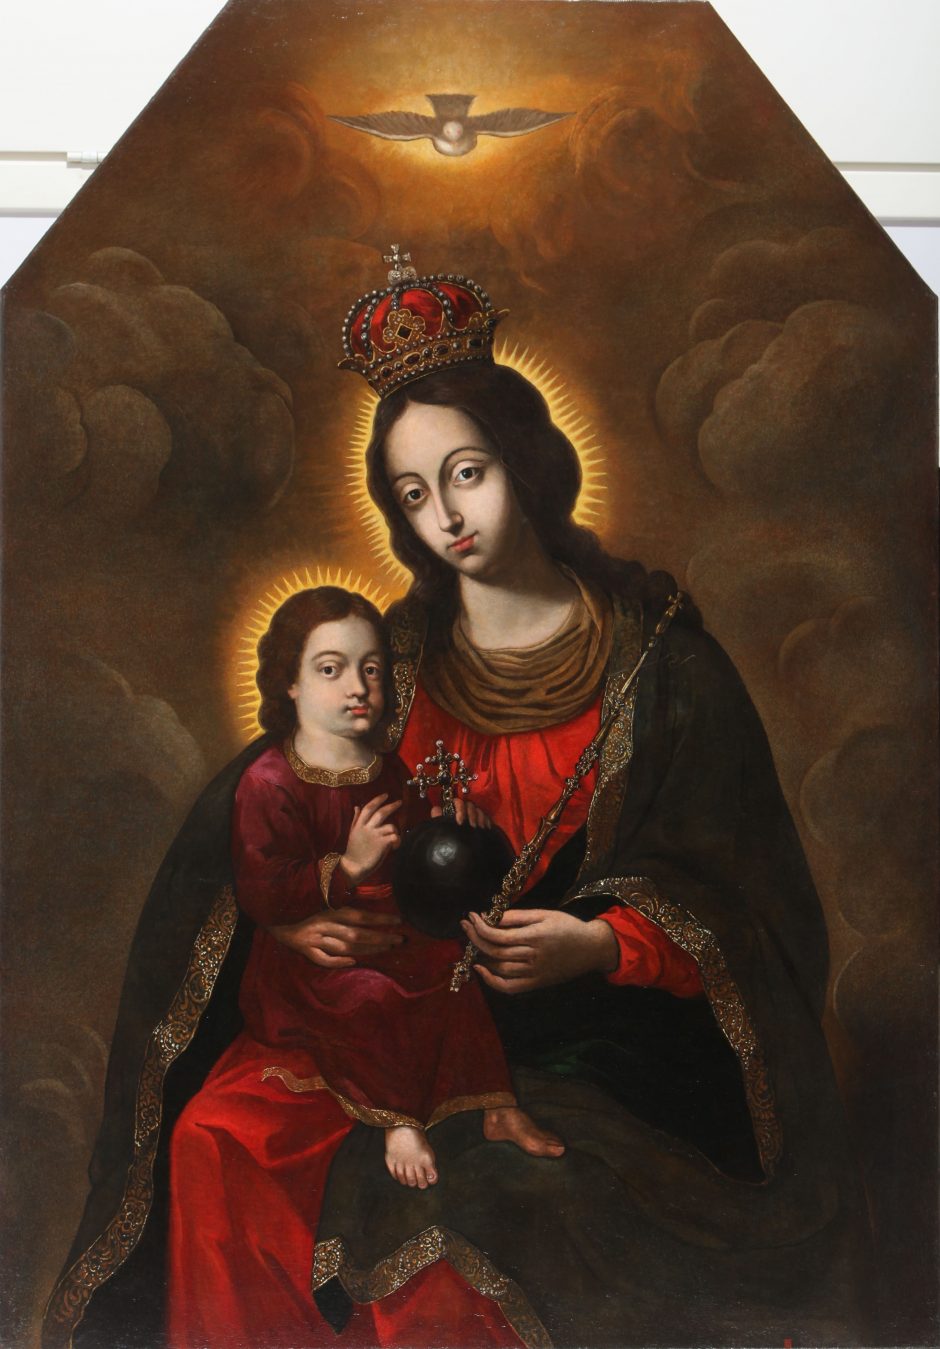 Į Pivašiūnus grįžta restauruotas Švč. Mergelės Marijos paveikslas